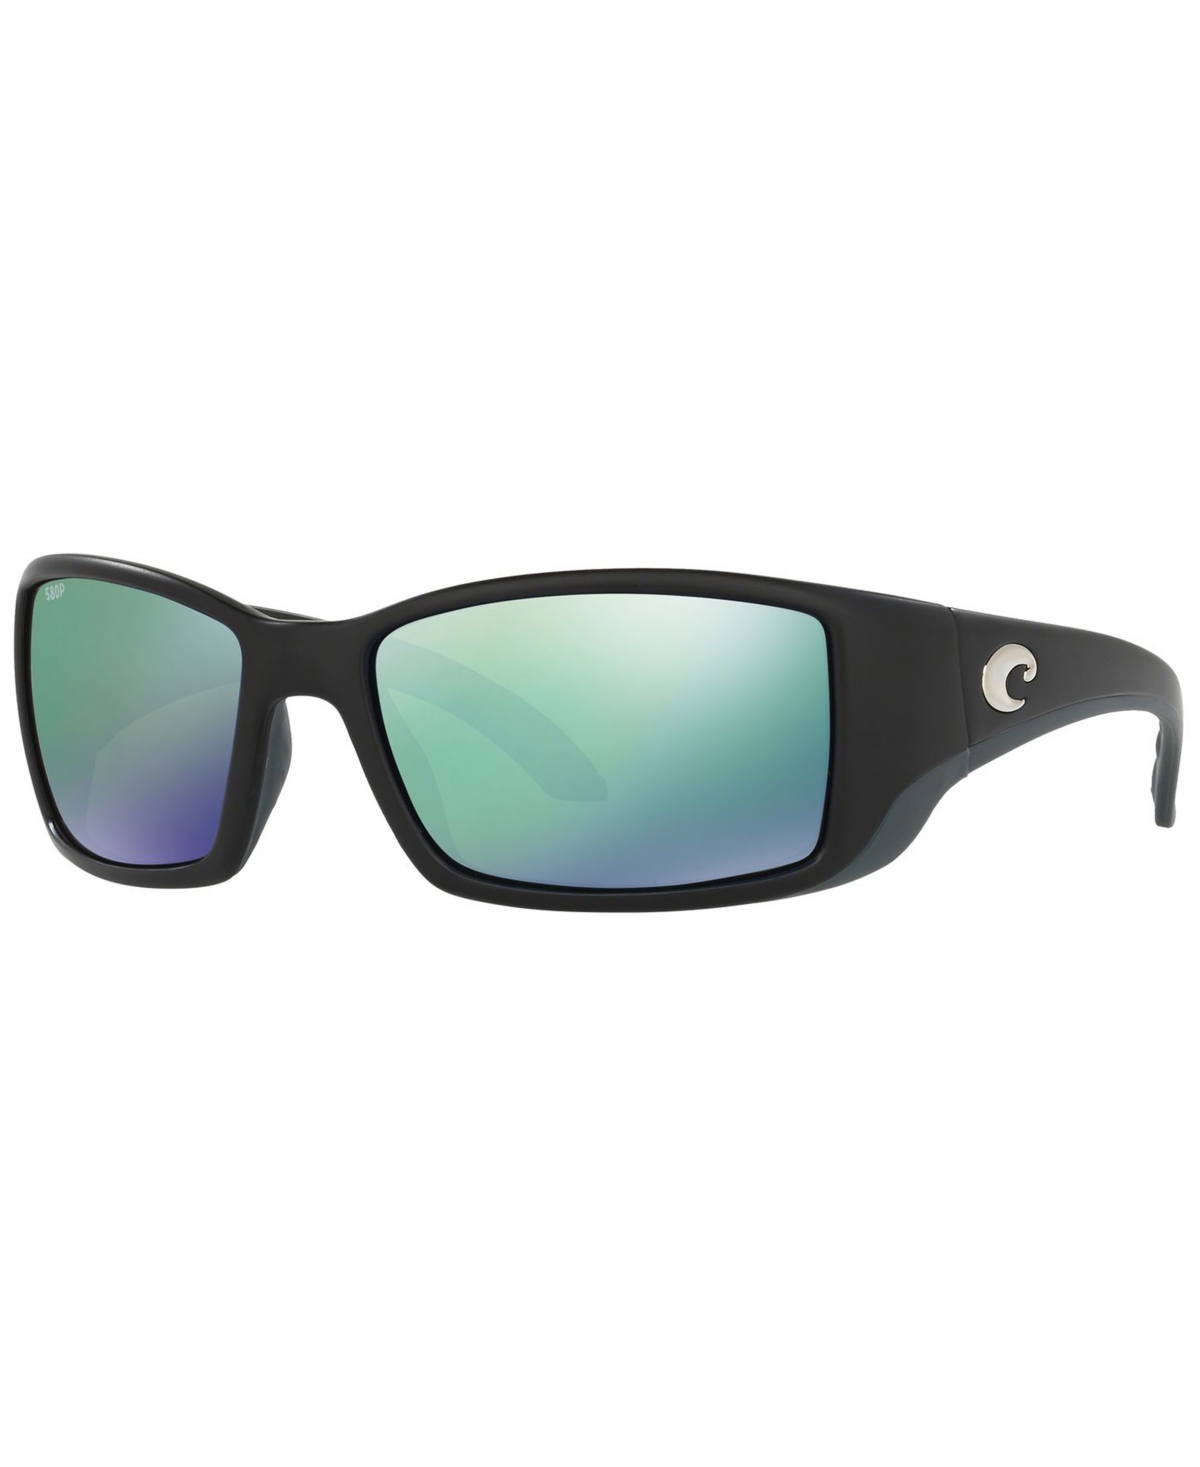 Costa Del Mar Polarized Sunglasses, Blackfin In Black Matte,blue Polar